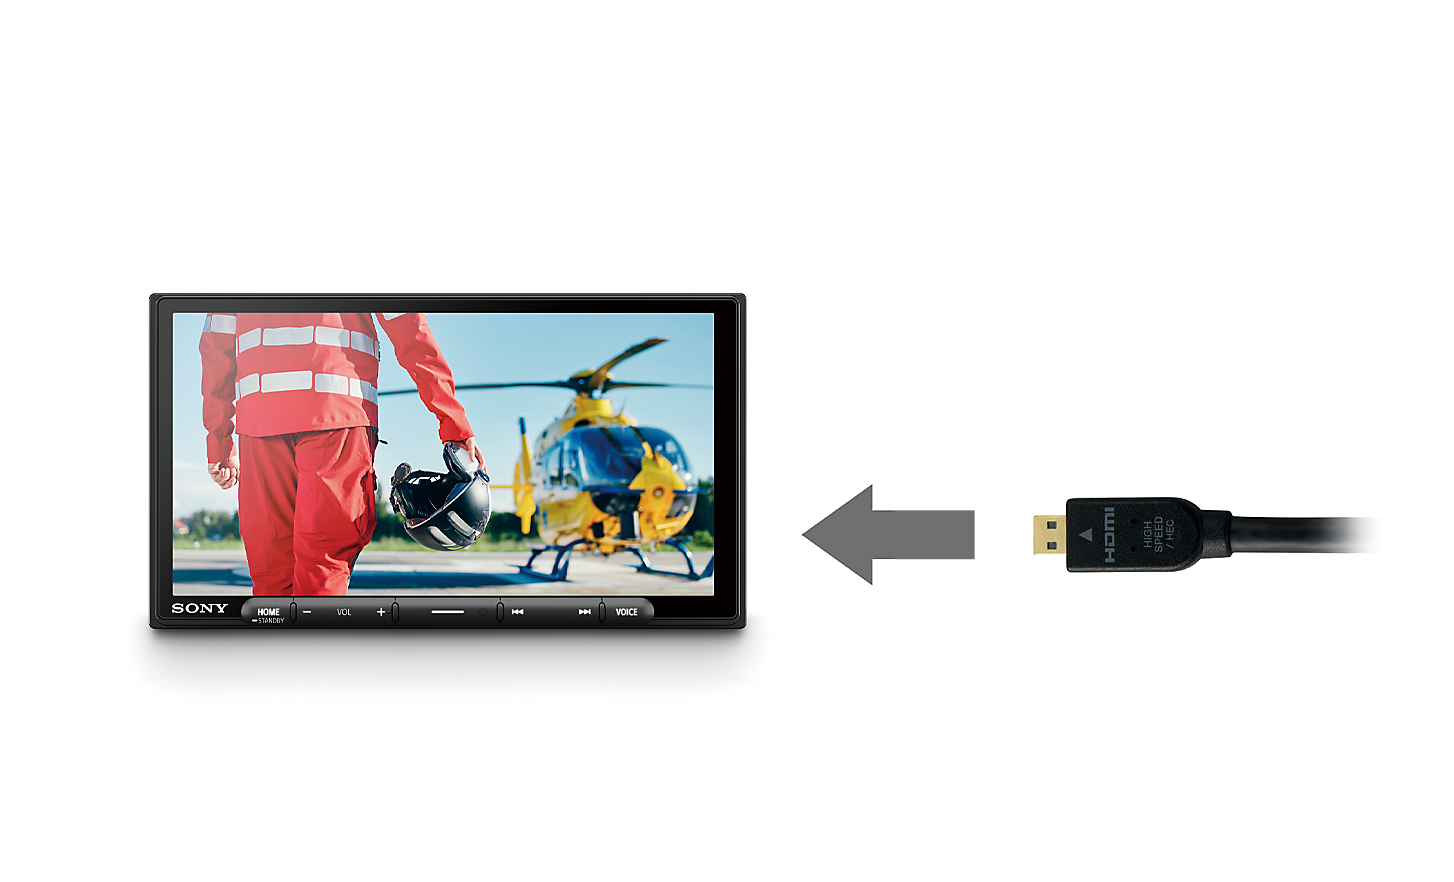 Obrázok kábla HDMI so šípkou, ktorá mieri k modelu XAV-AX6050, na obrazovke je pilot a helikoptéra